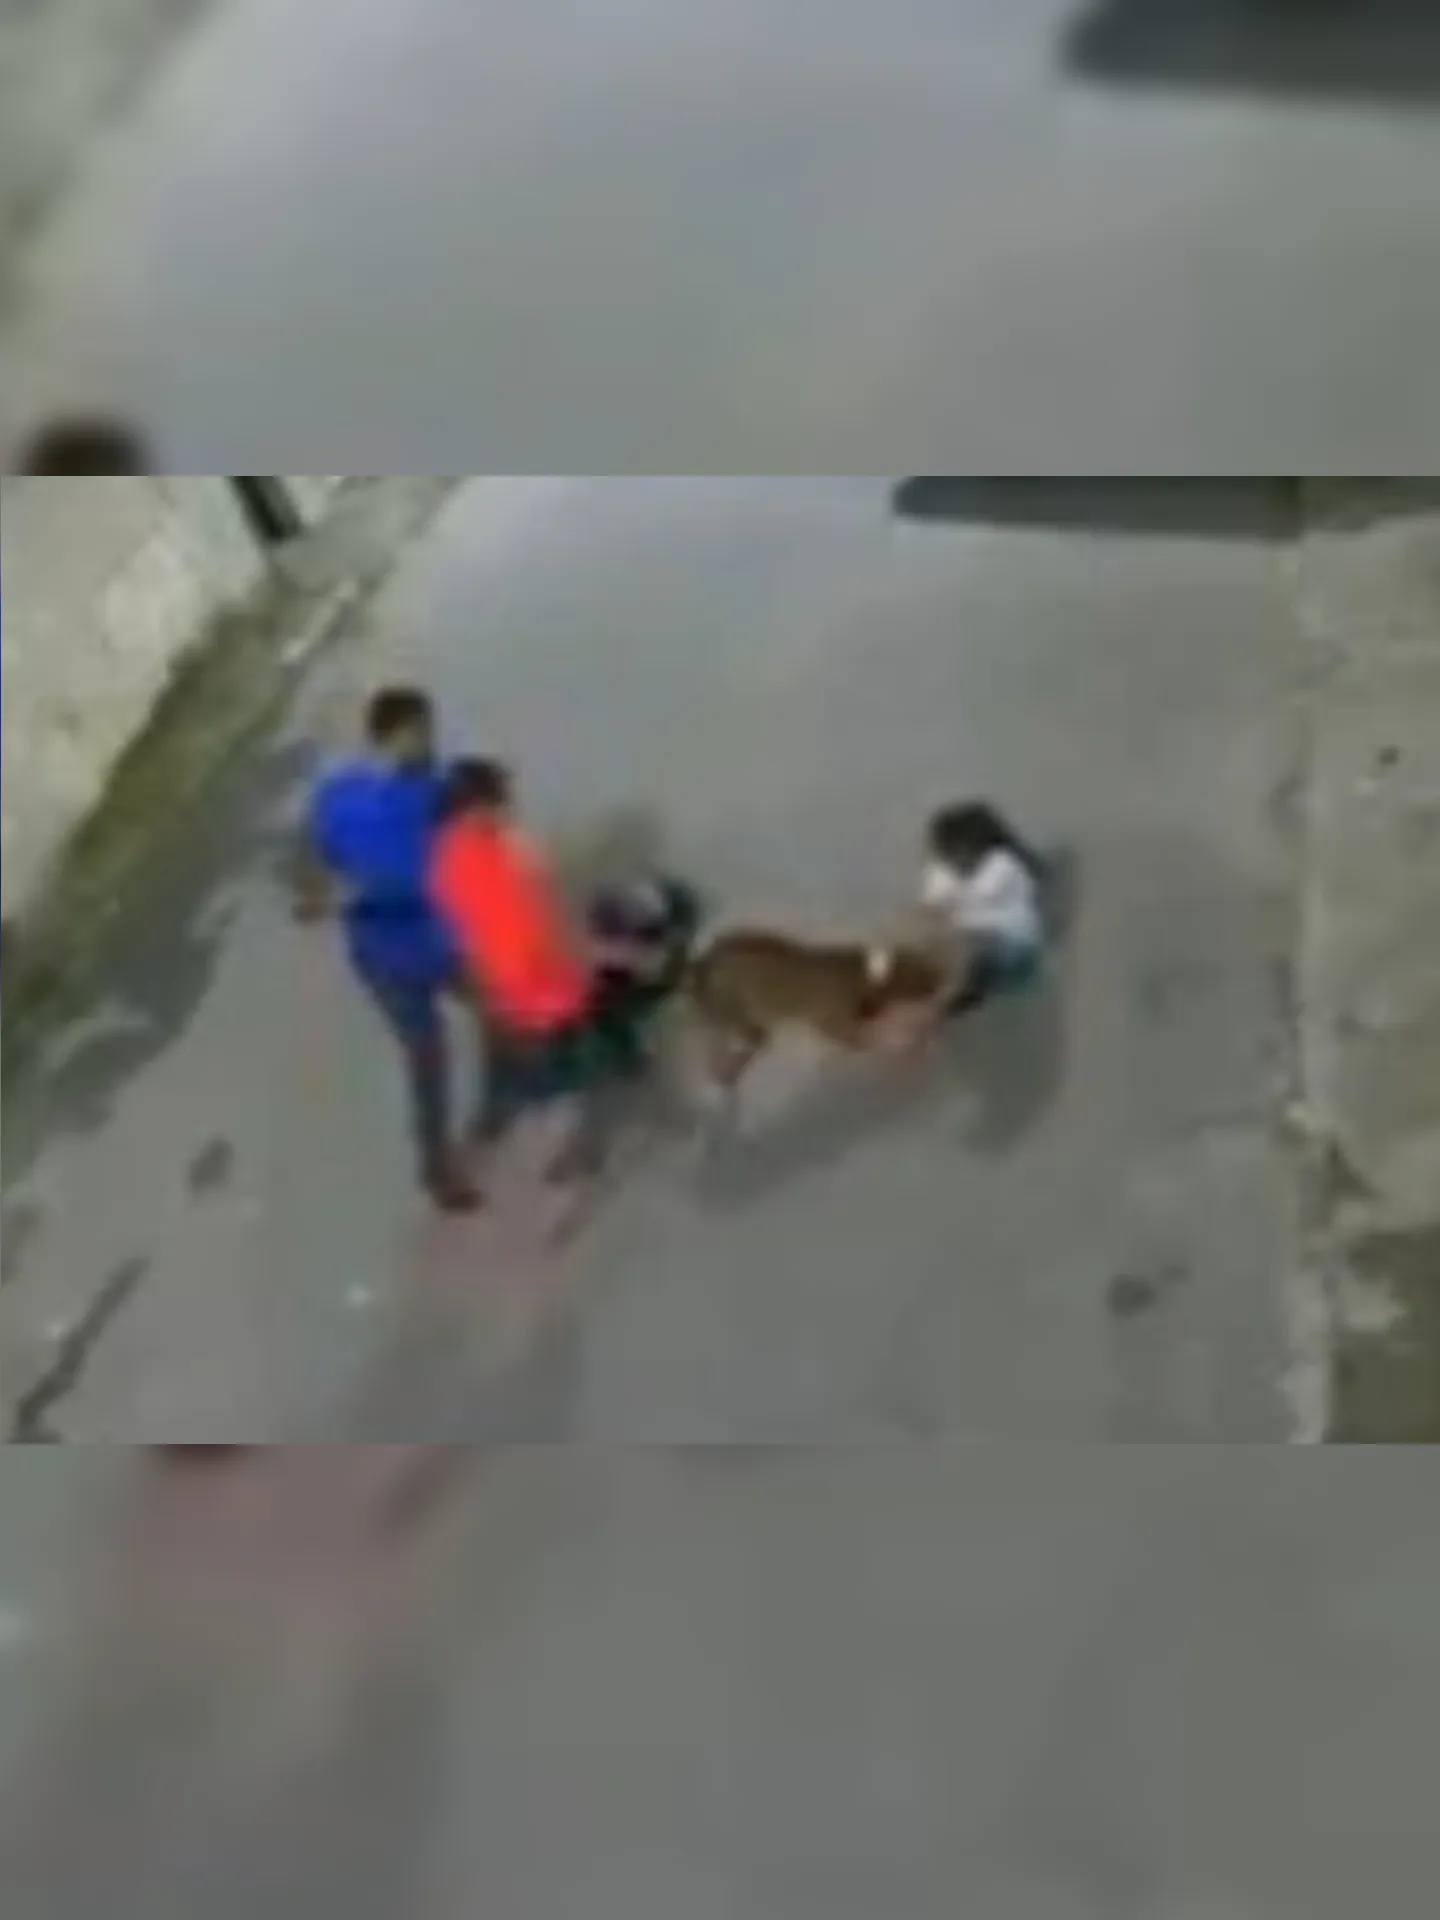 Cão agarrou perna da criança de 10 anos. Ela segue internada no hospital Souza Aguiar